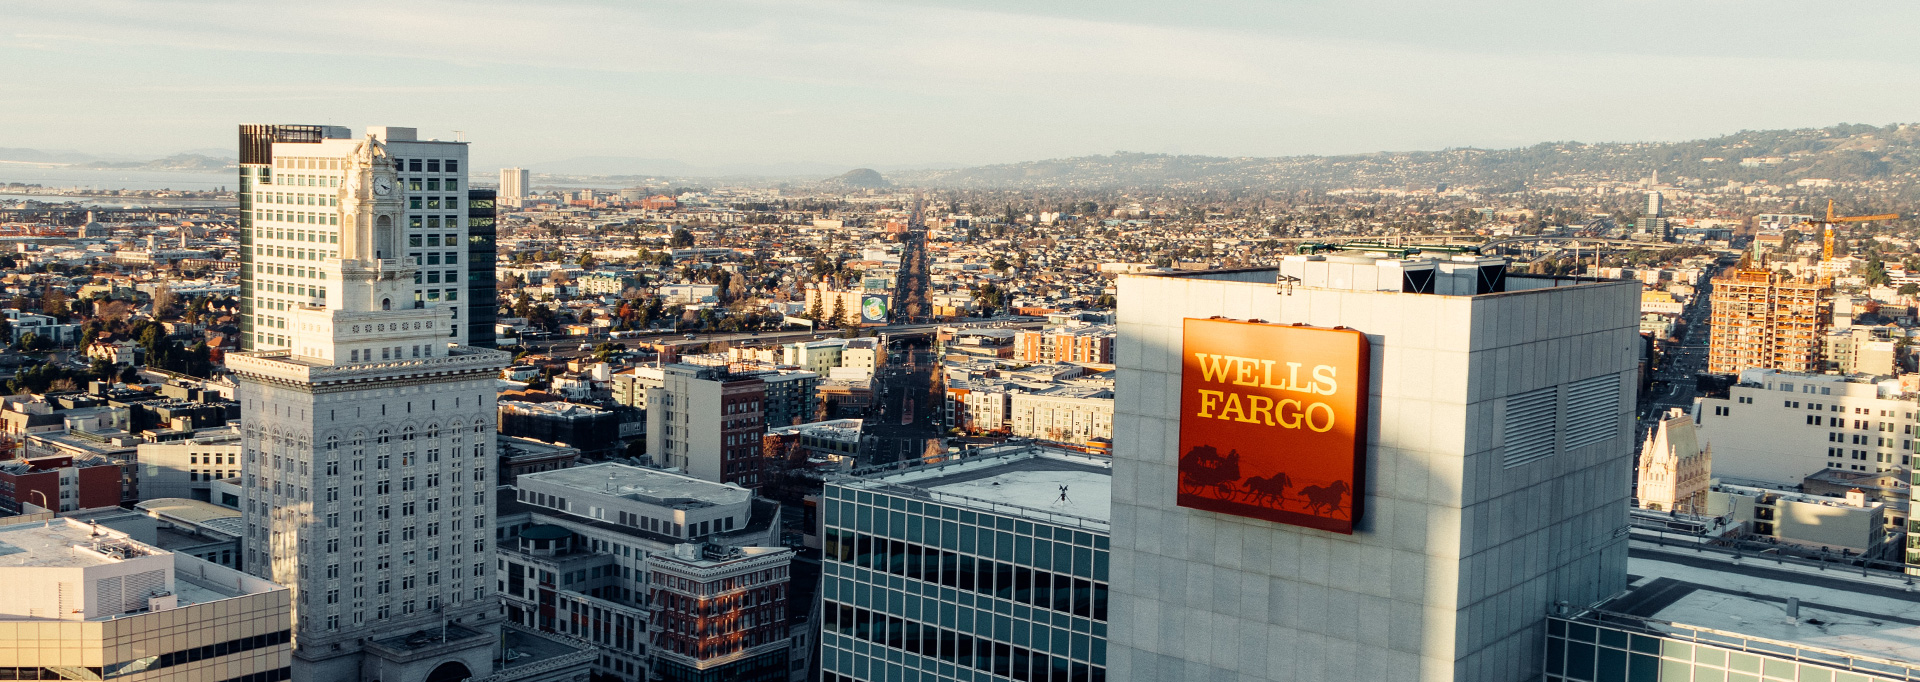 Wells Fargo building in Oakland